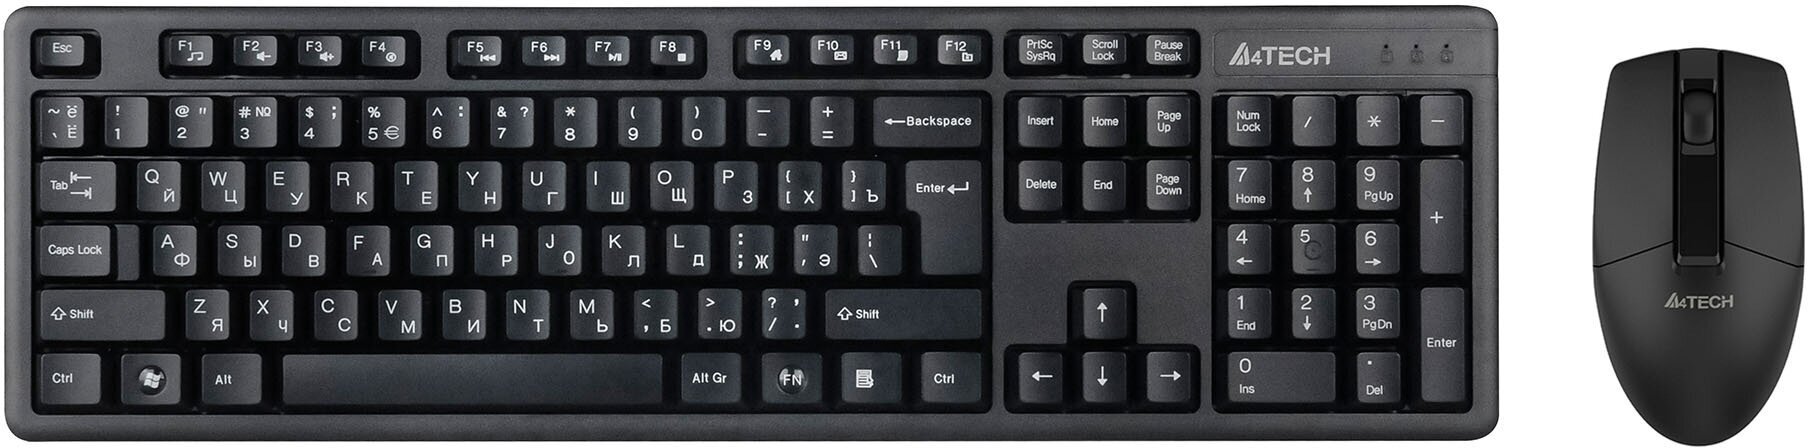 Клавиатура+мышь A4Tech 3330N клав: черный мышь: черный USB беспроводная Multimedia